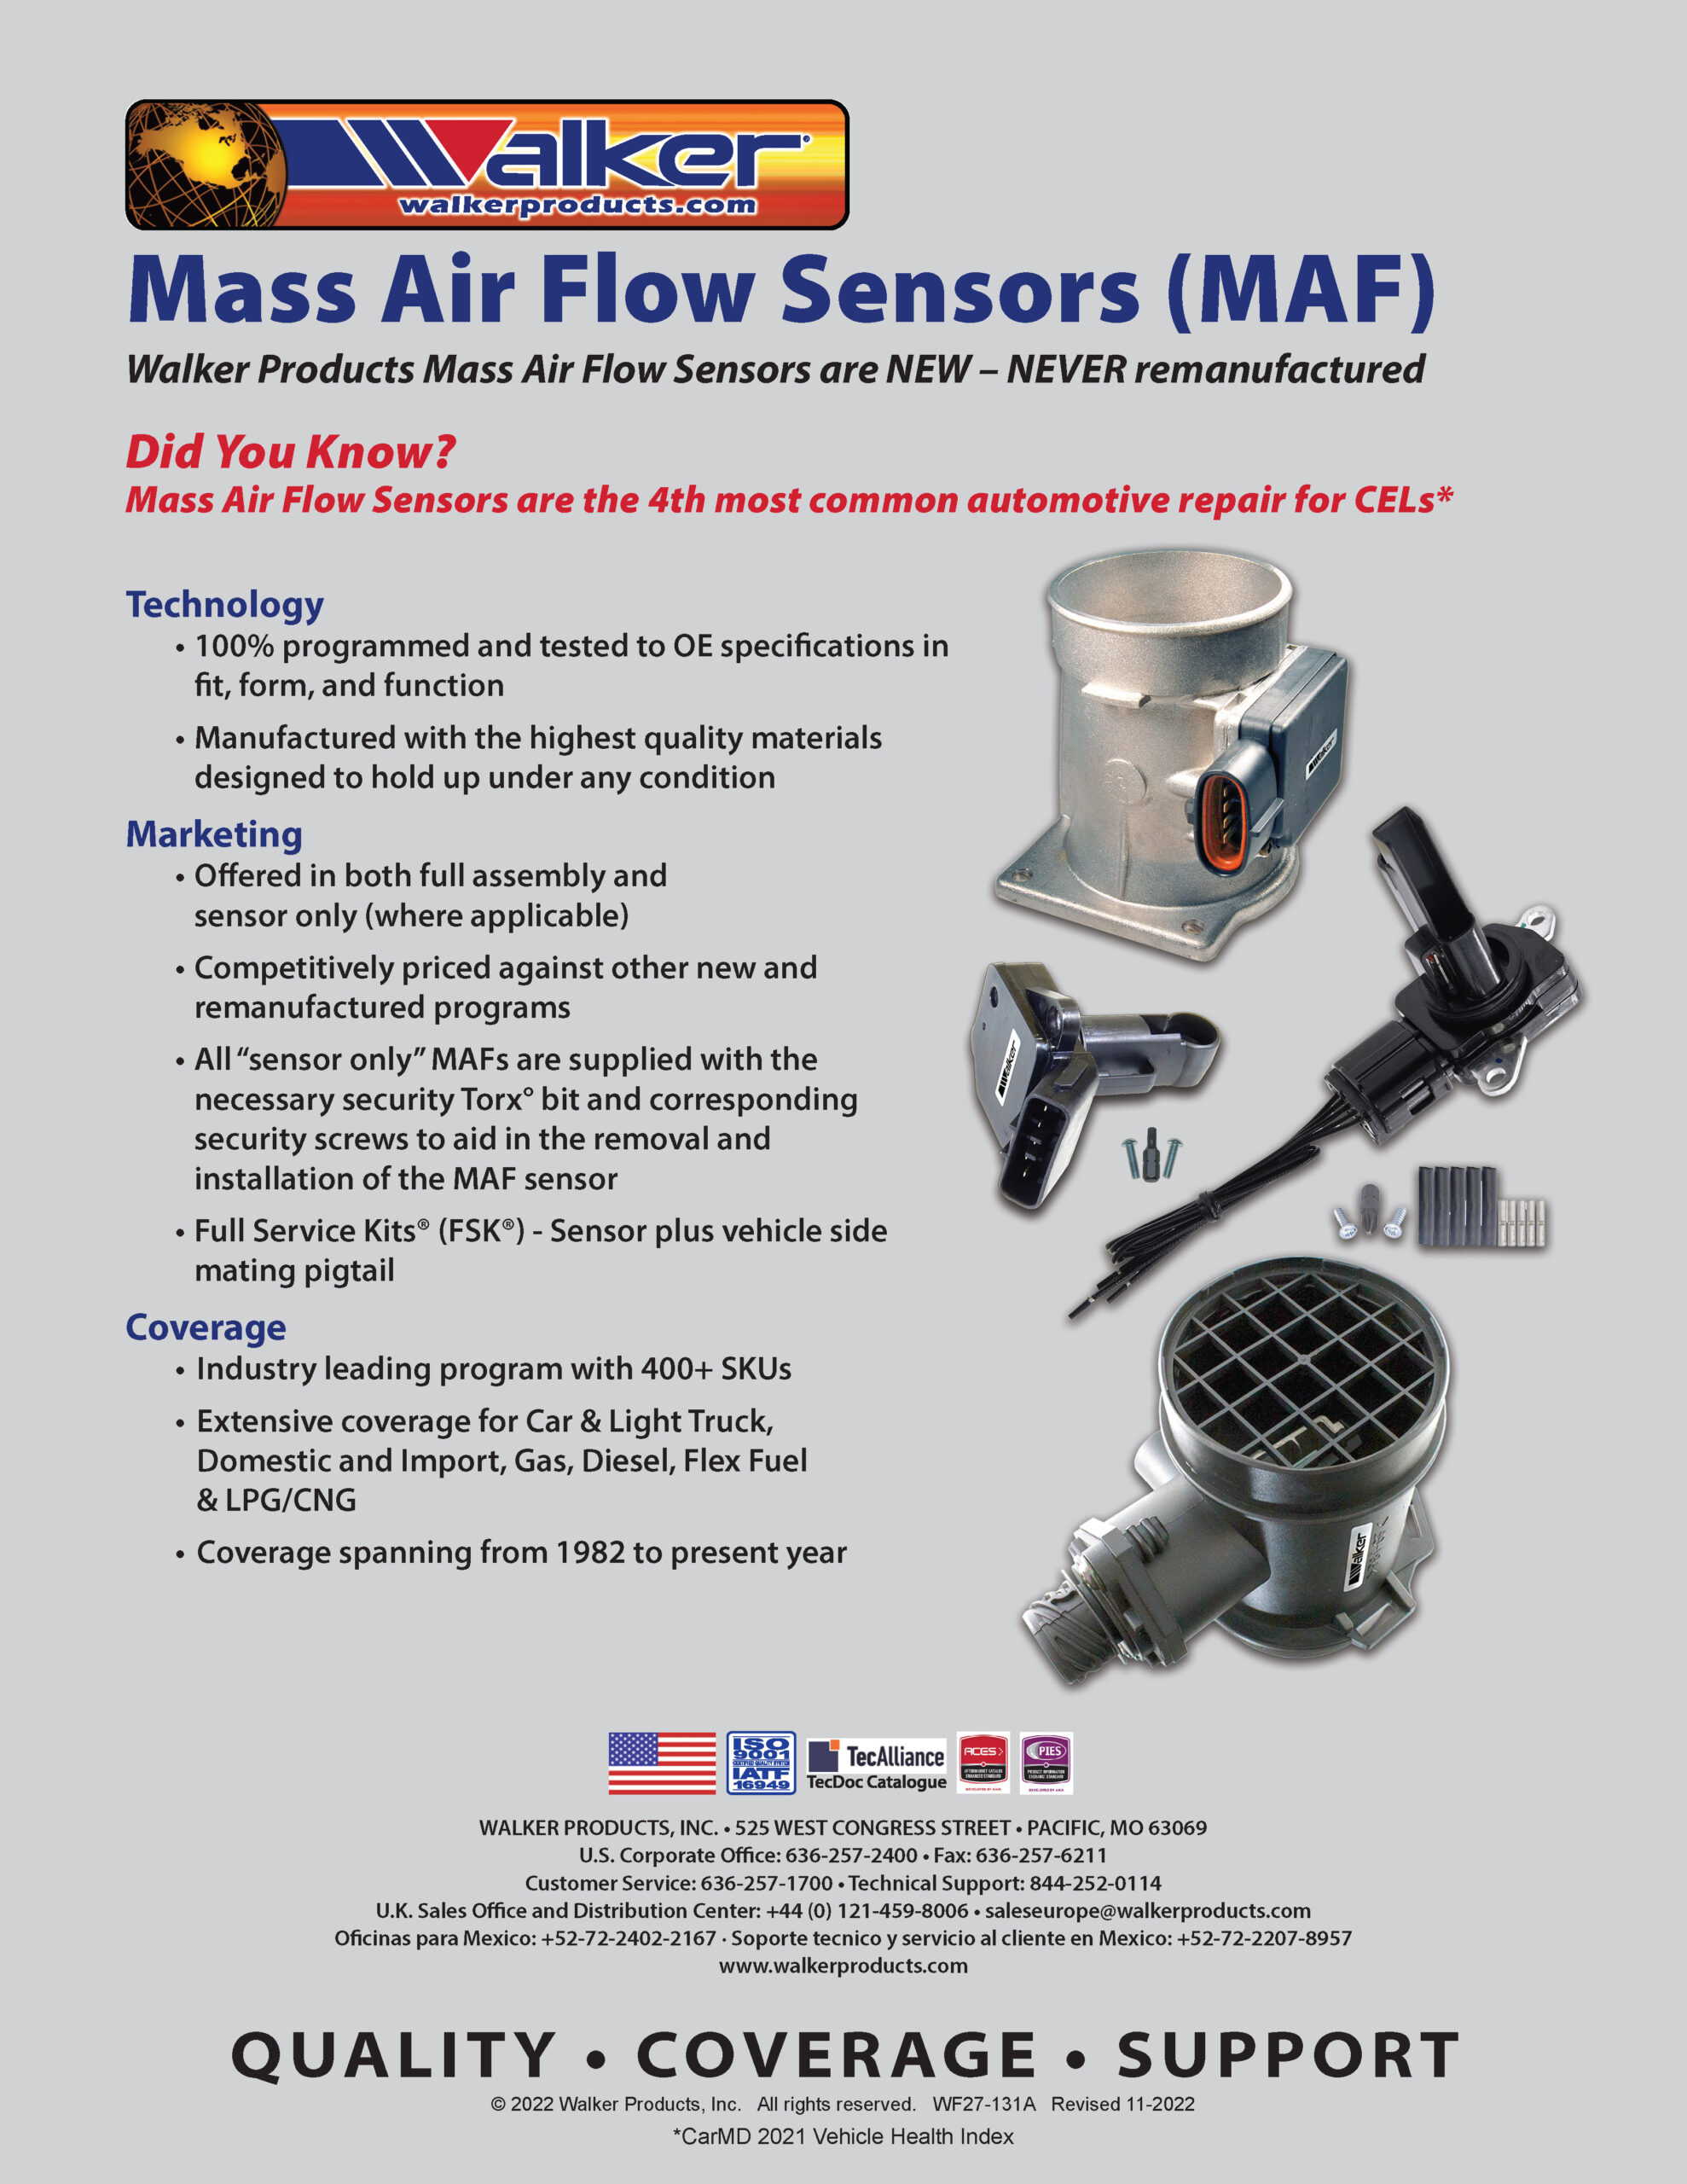 Mass Air Flow Sensors - Walker Products